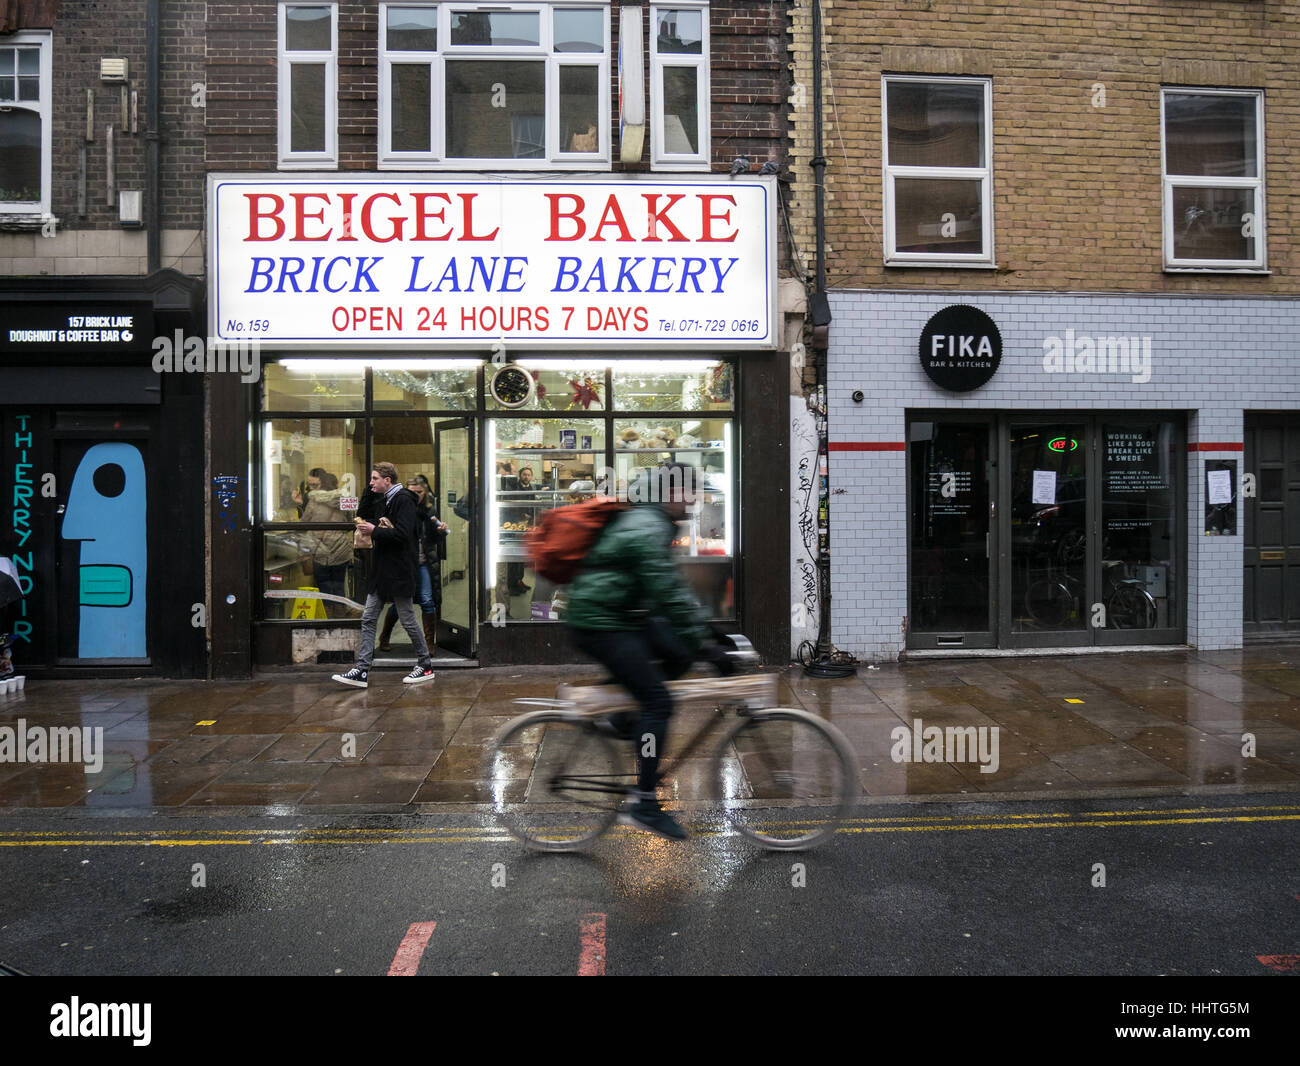 Tienda Beigel Brick Lane - tienda de bagels un ciclista paseos el pasado 24 horas Panadería Beigel en London's Brick Lane Foto de stock